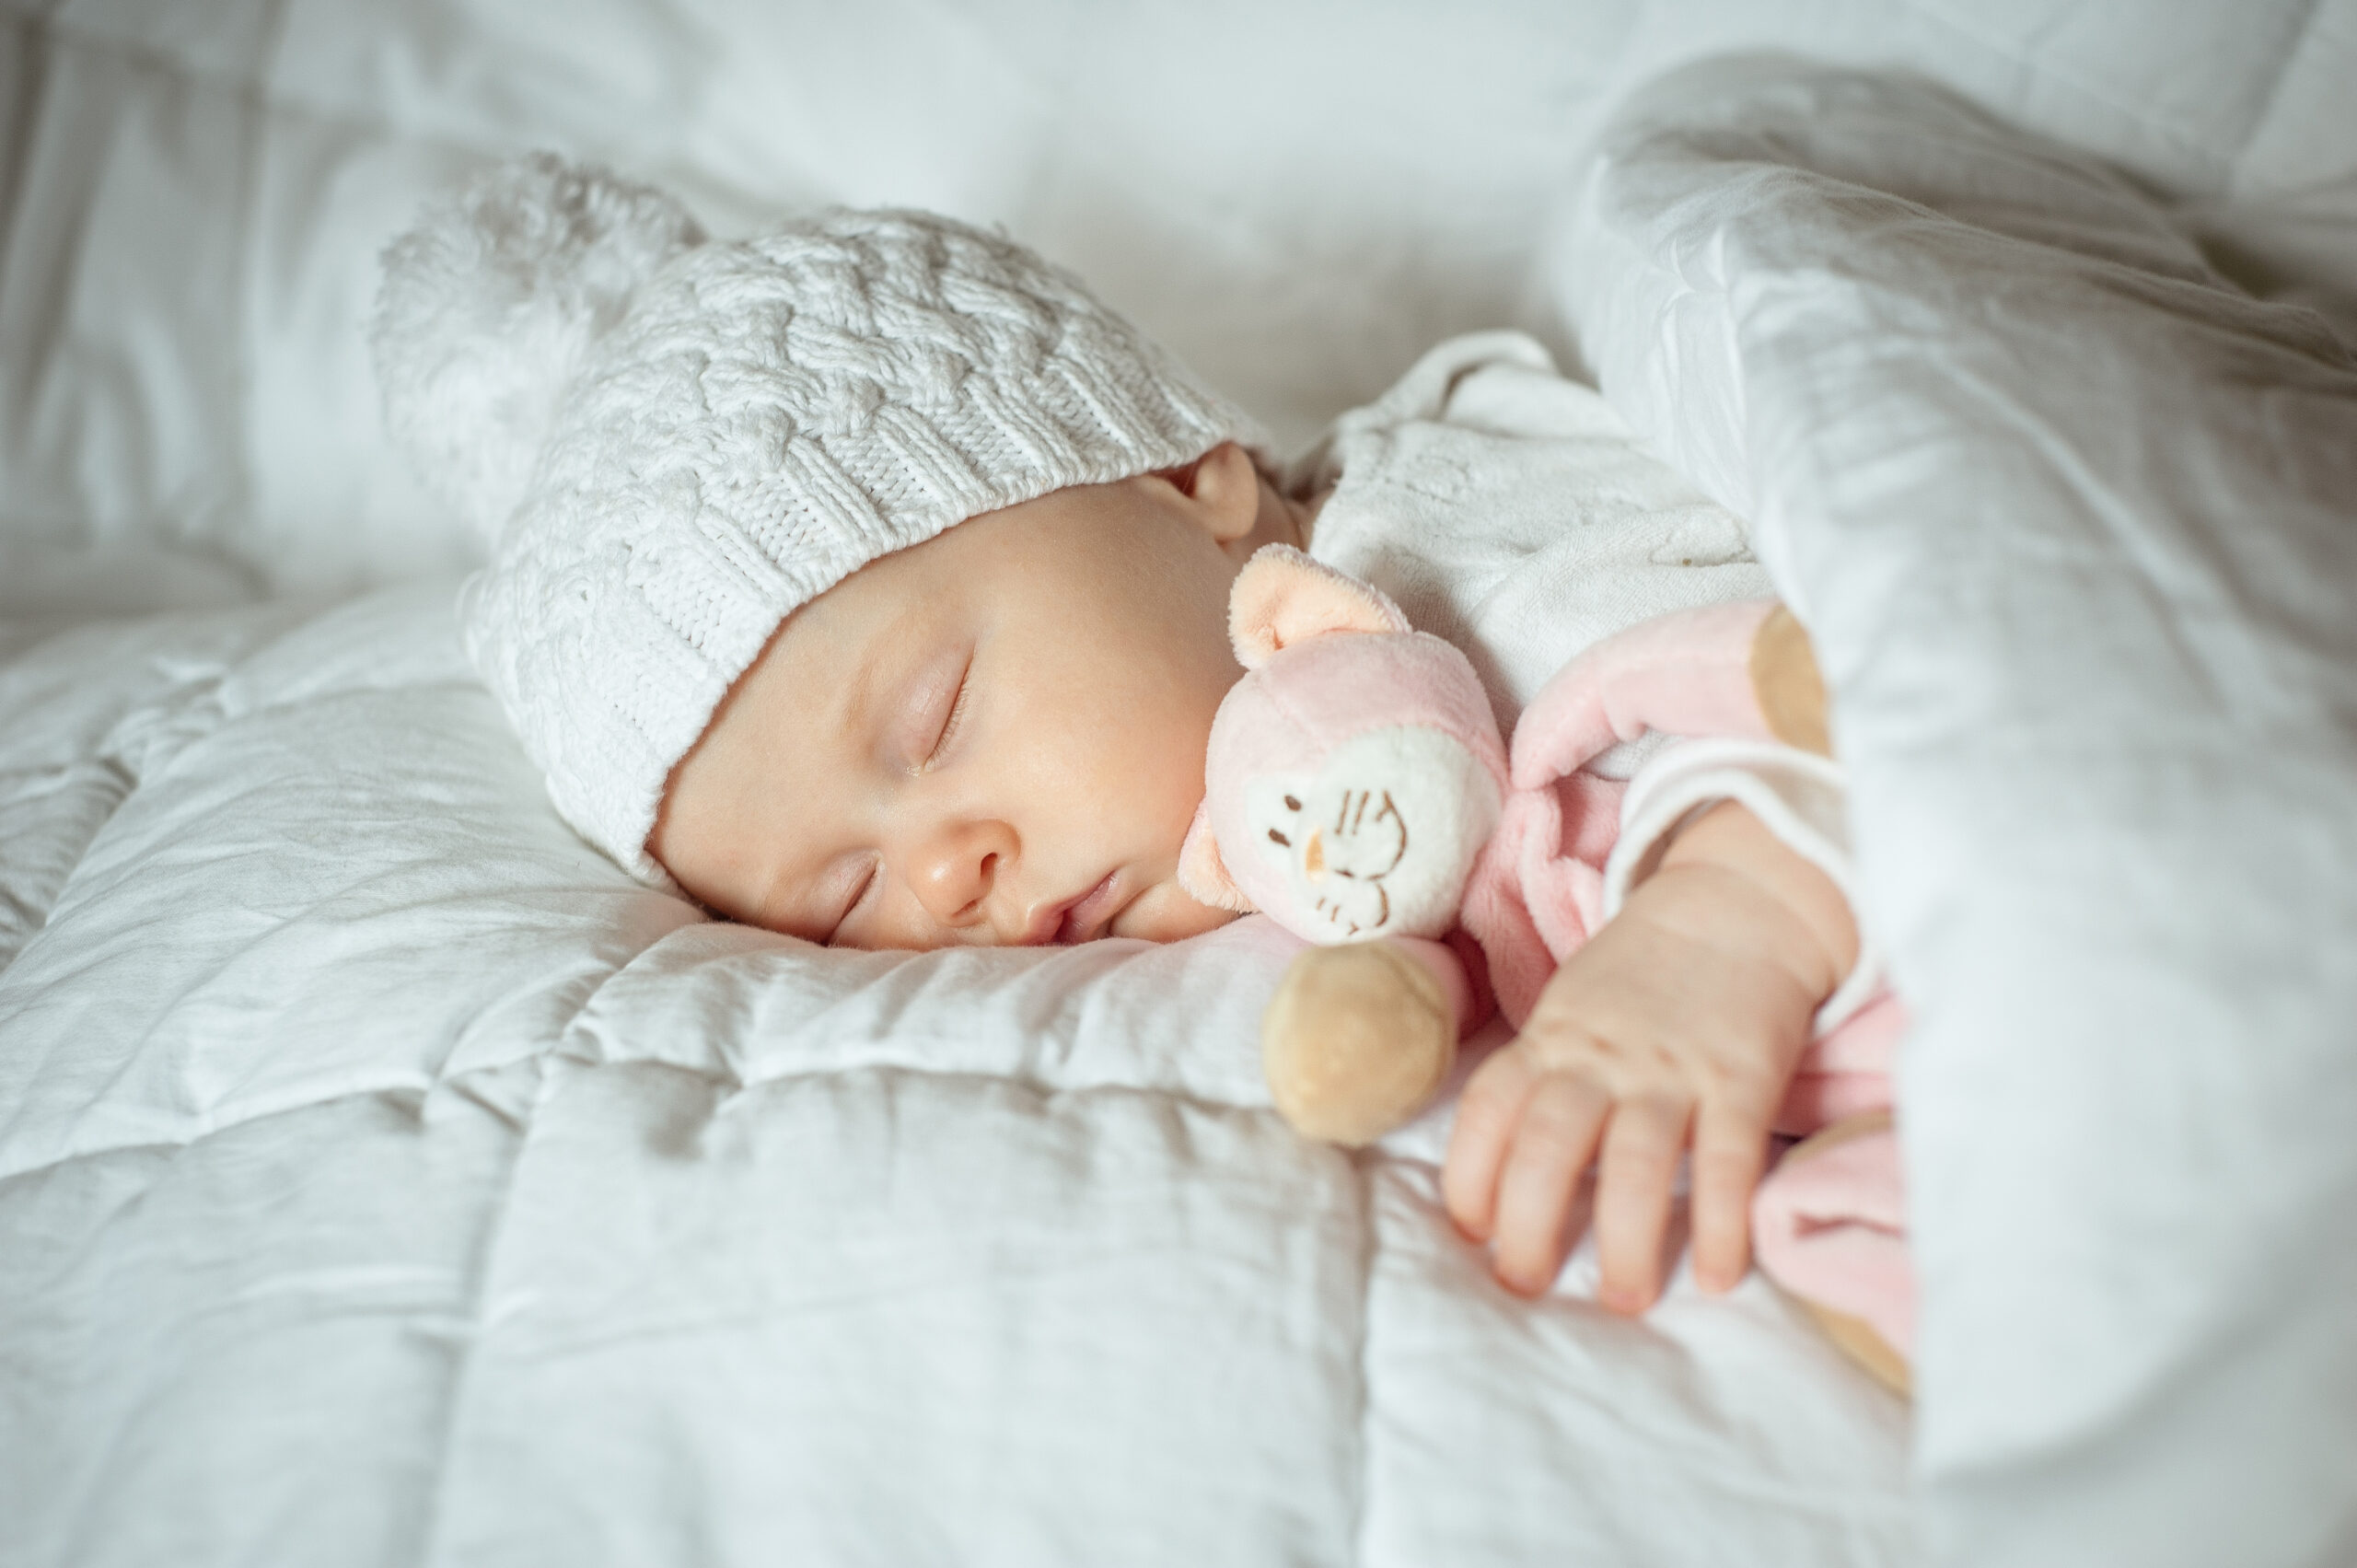 Na zdjęciu widoczny jest uroczy noworodek, ubrany w miękkie i przytulne ubranko oraz czapeczkę. Maluszek śpi spokojnie, z uśmiechem na twarzy, co może być dowodem na to, że jego ubranie jest wygodne i komfortowe. Taki obrazek może przypominać każdemu, jak ważne jest, aby wybierać odpowiednie ubrania dla noworodka, które zapewnią mu wygodę i bezpieczeństwo już od pierwszych chwil życia.